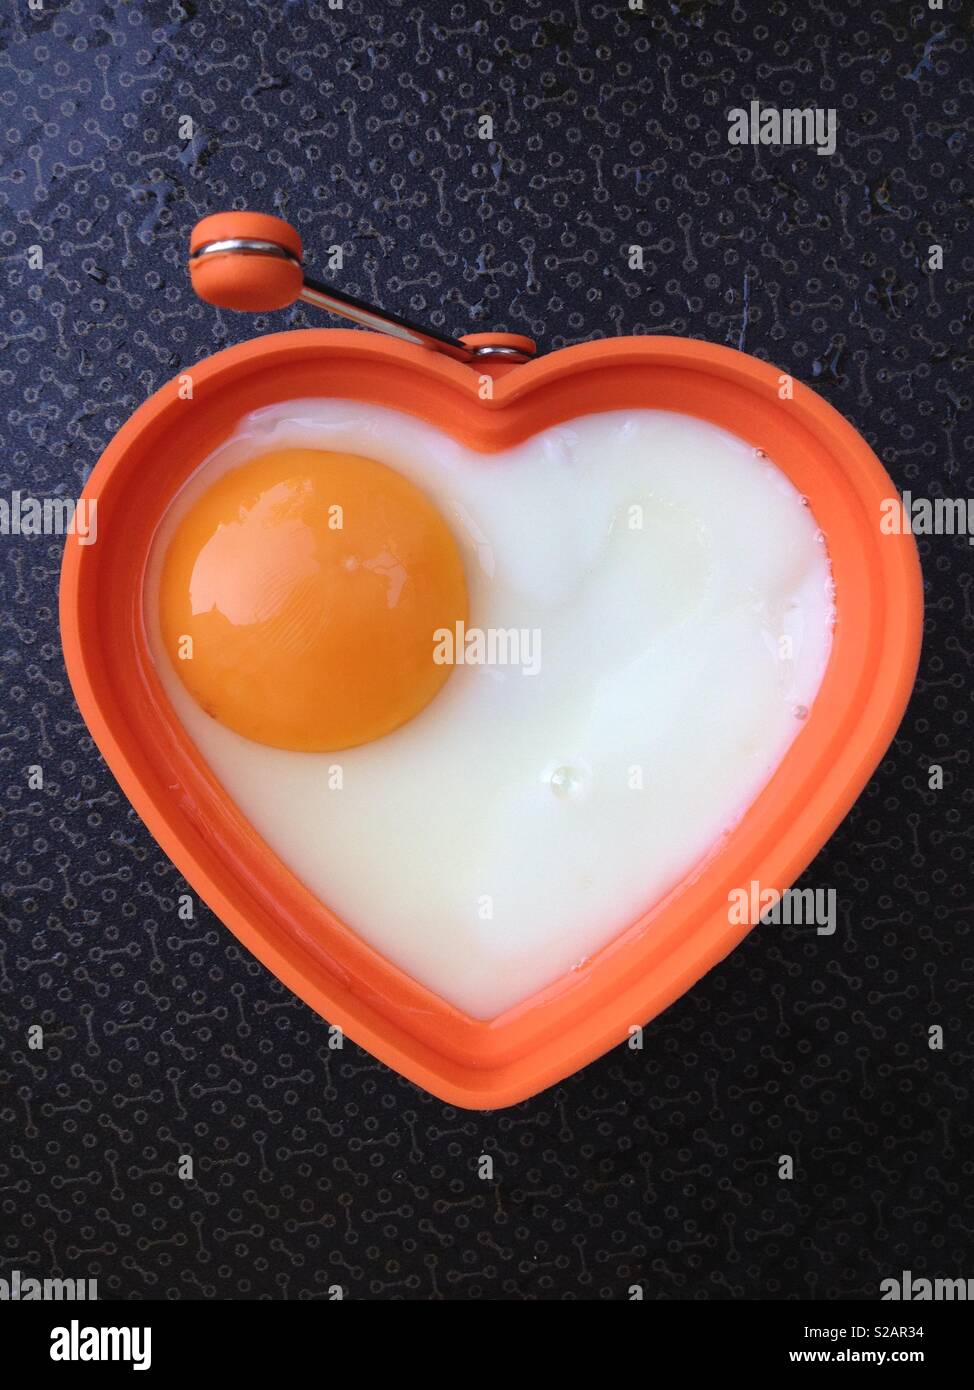 Spiegeleier, gebratenen Braten in der Pfanne. Die Eier ist in der Form eines gesunden Herzens eine gesunde Ernährung und gutes Wohlbefinden zu implizieren. Stockfoto